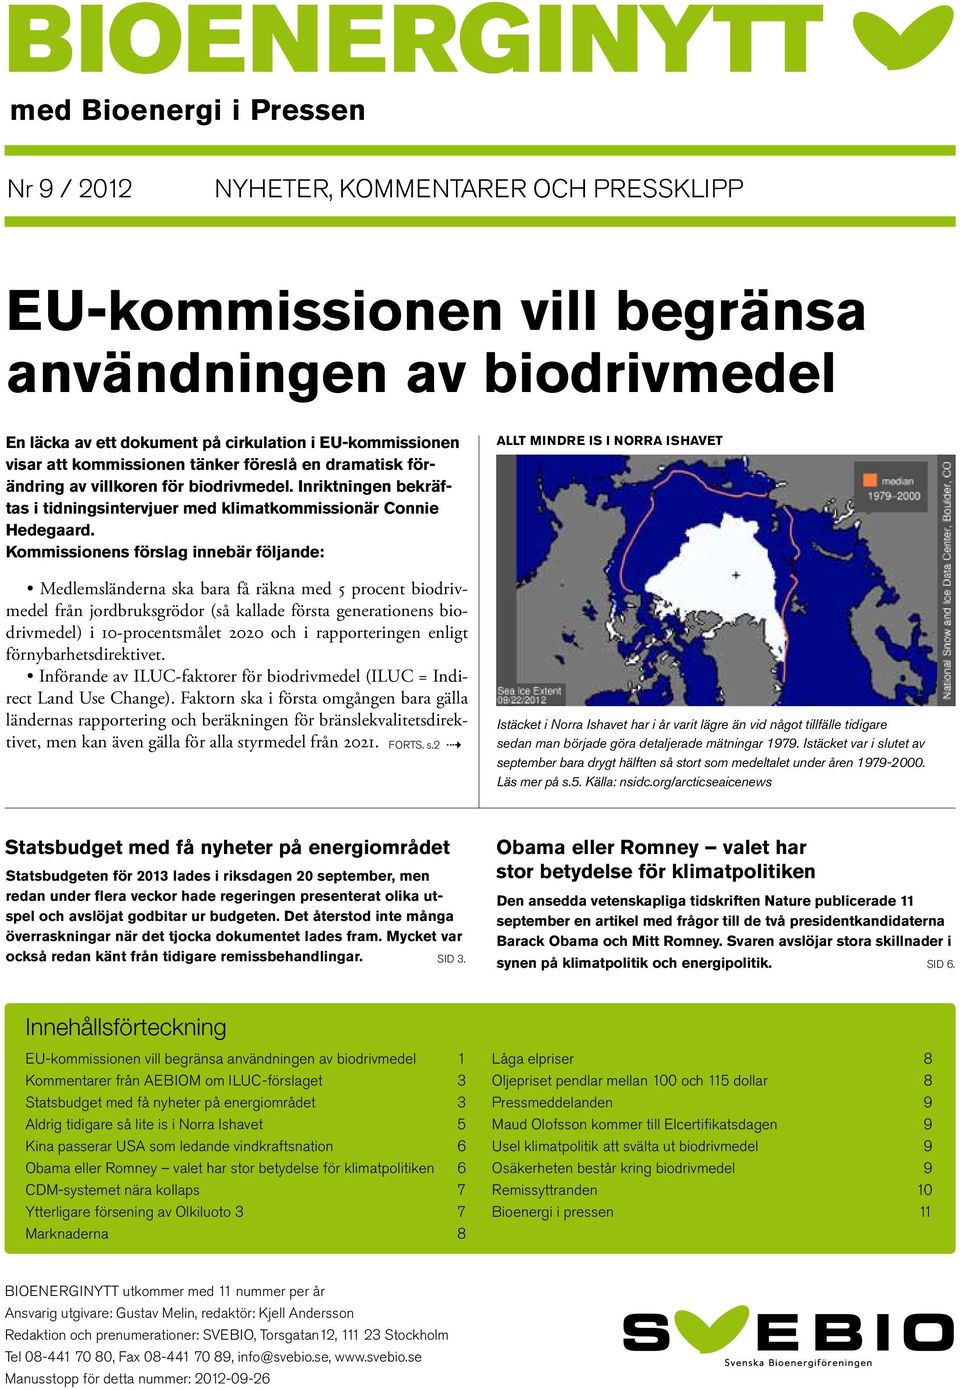 Kommissionens förslag innebär följande: Medlemsländerna ska bara få räkna med 5 procent biodrivmedel från jordbruksgrödor (så kallade första generationens biodrivmedel) i 10-procentsmålet 2020 och i